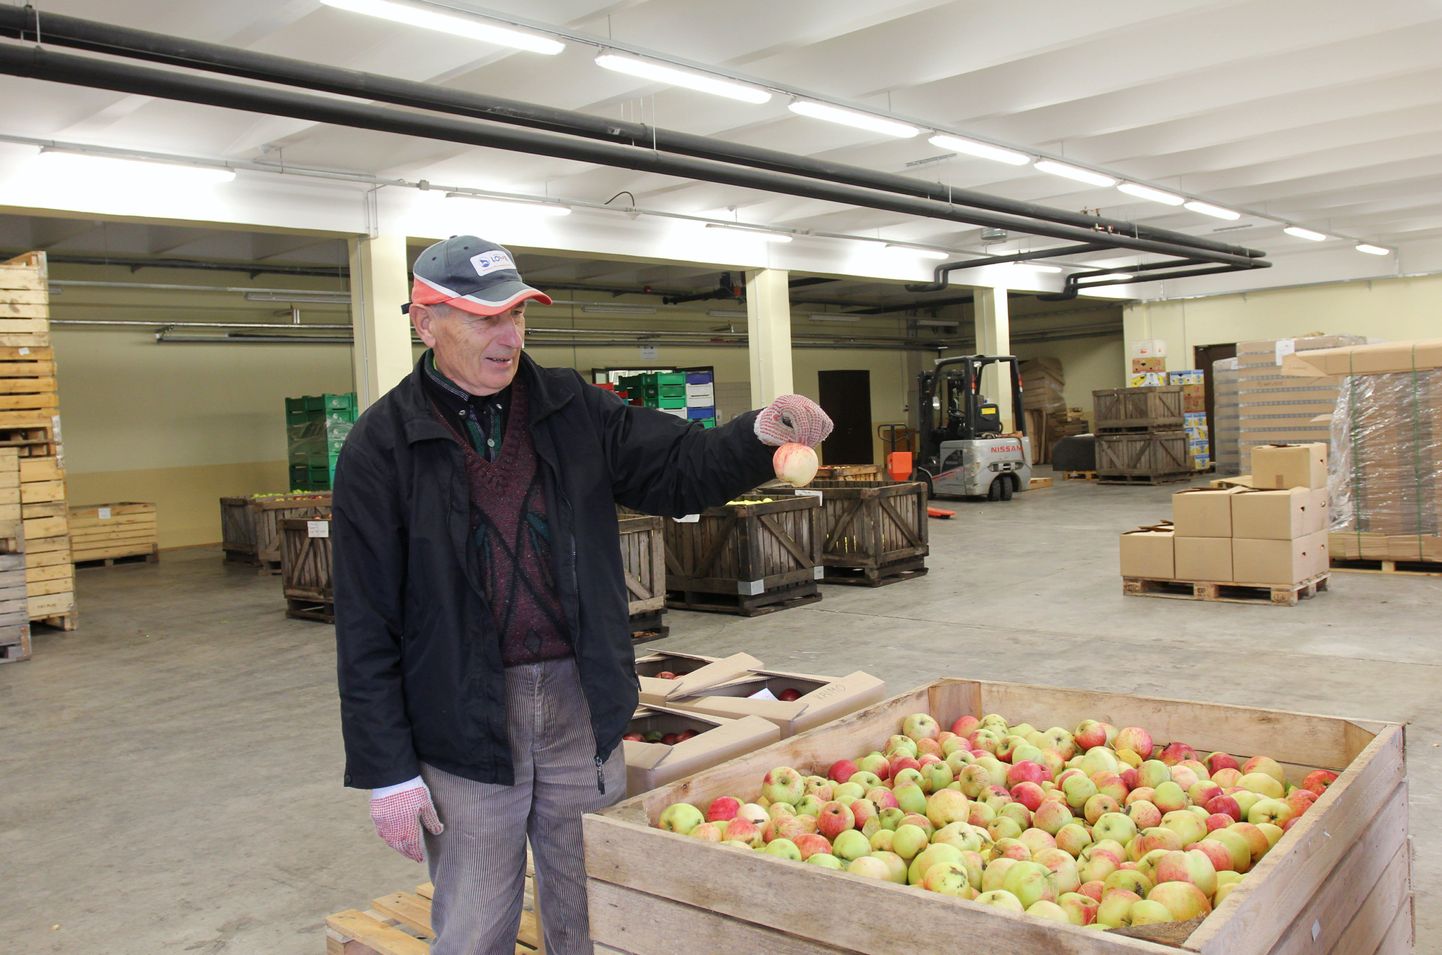 Polli aiandusuuringute keskuse vanemteadur Toivo Univer rõhutab, et õige hoiustamise korral on võimalik õunu säilitada üpris pikalt.